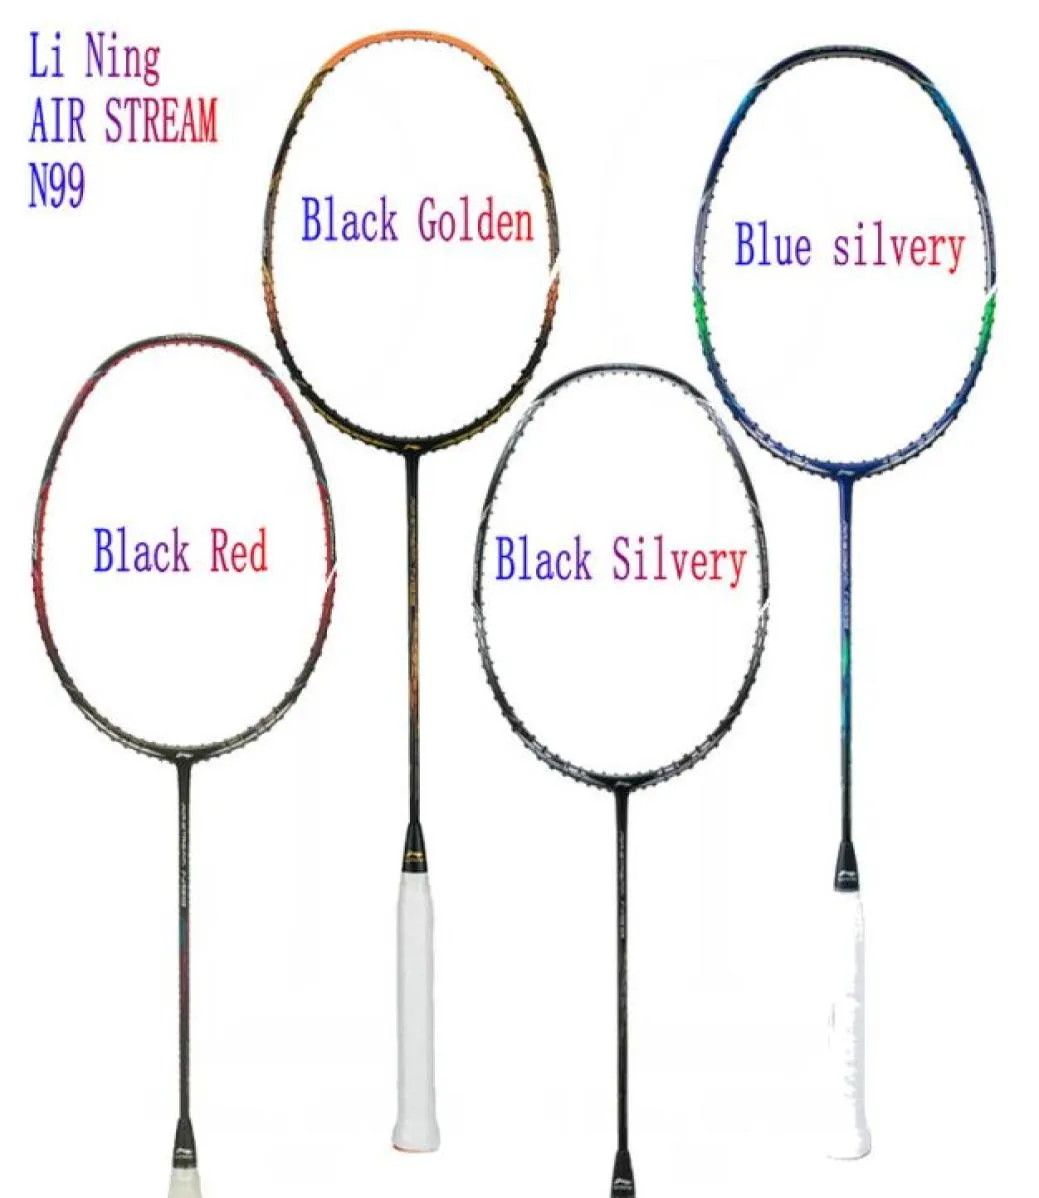 LINING AIR STREAM N99 II Chen Long Badminton Nazionale Racchetta Racchetta in carbonio ad alta elasticità Completamento della linea perfetto85881016937